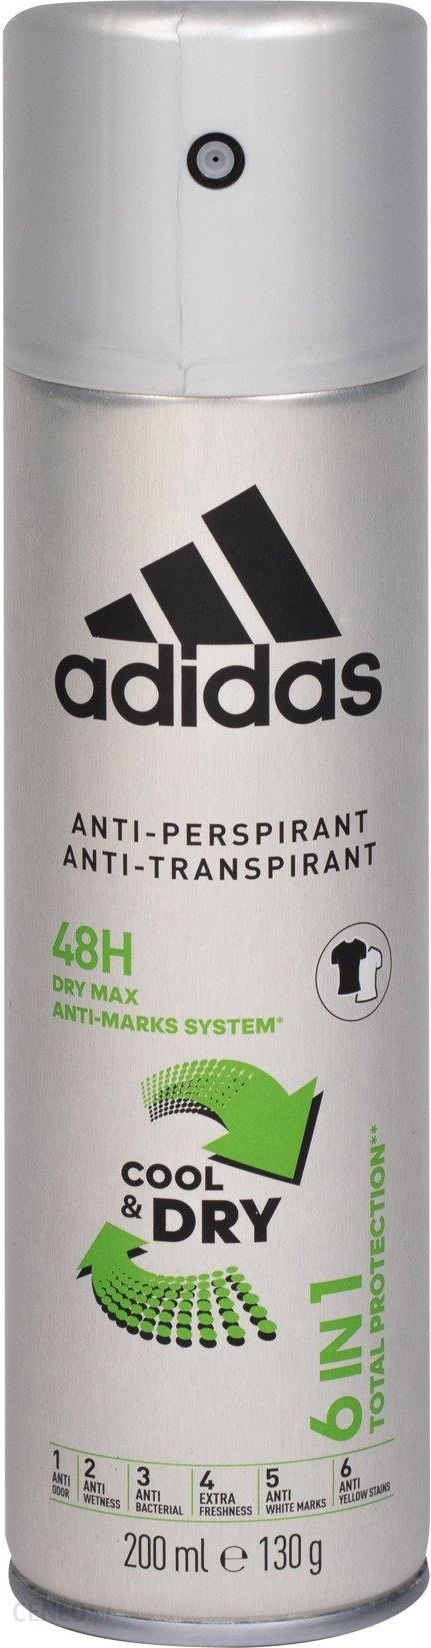 Adidas 6In1 Dry 48H 200ml - Opinie i ceny na Ceneo.pl